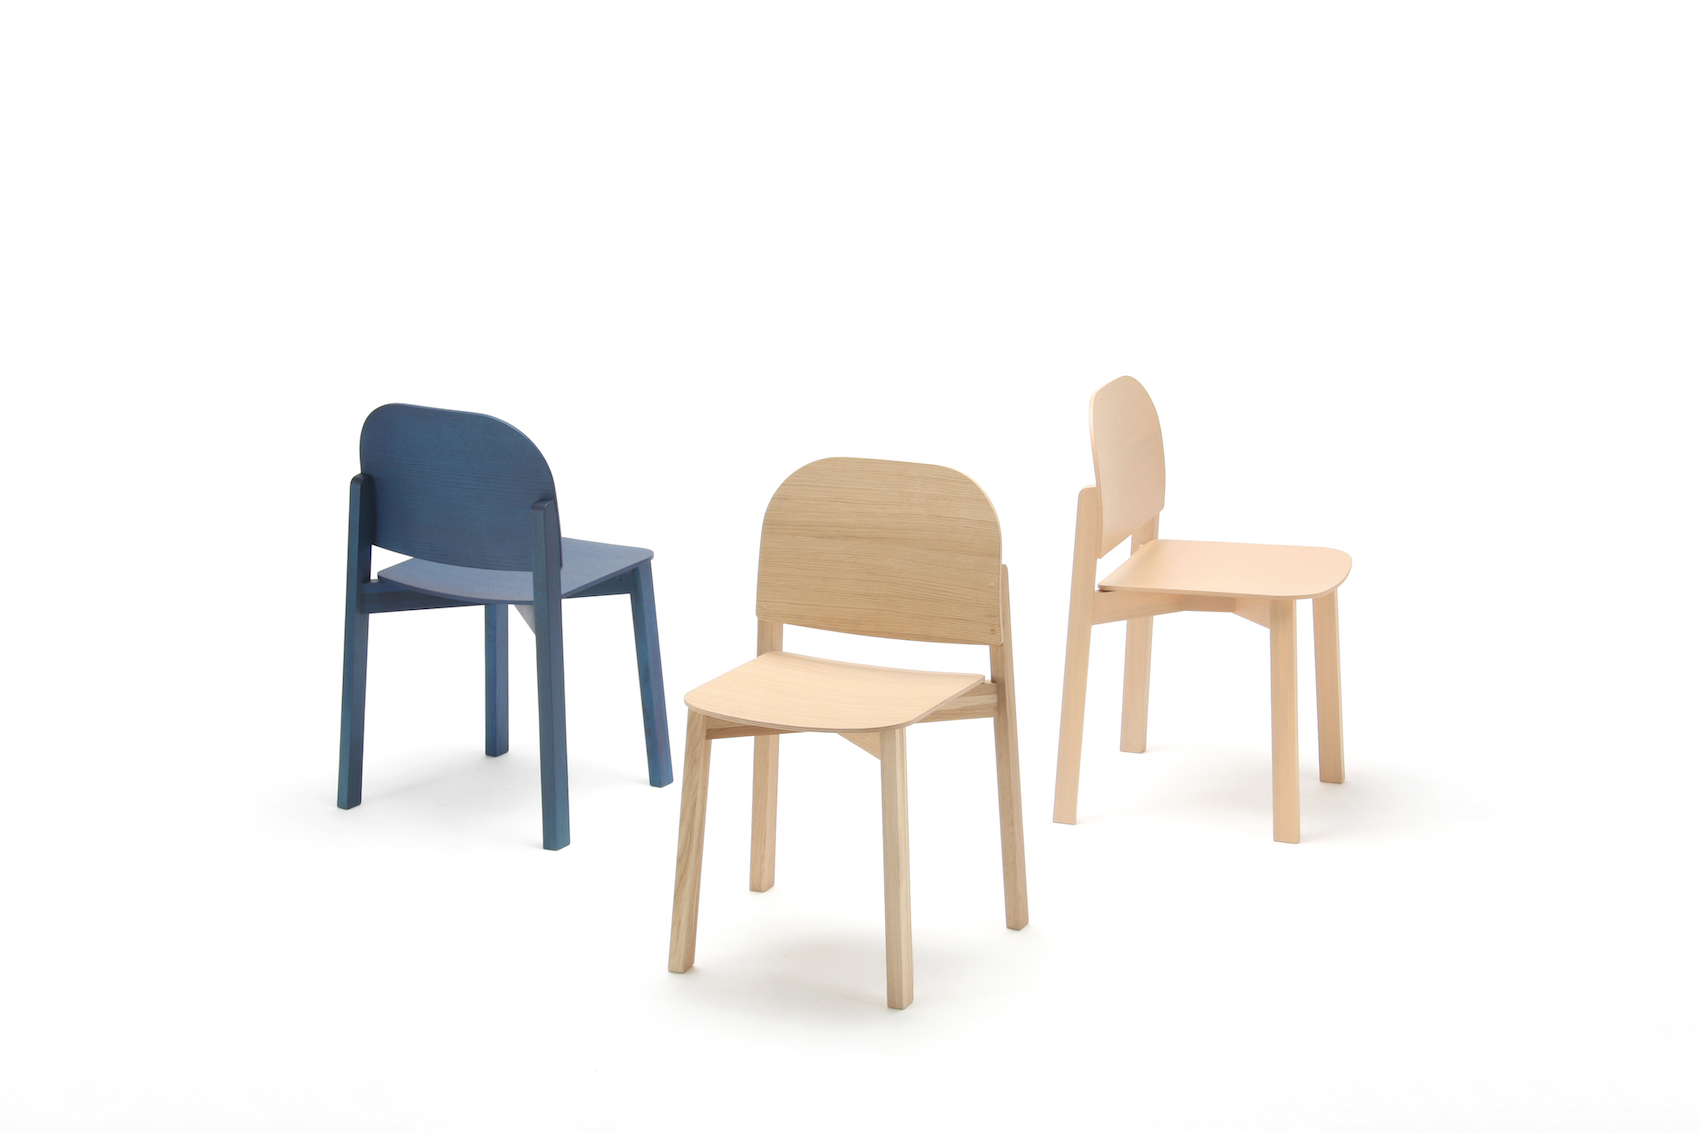 Minimalist "Polar Chair" Designed by Moritz Schlatter